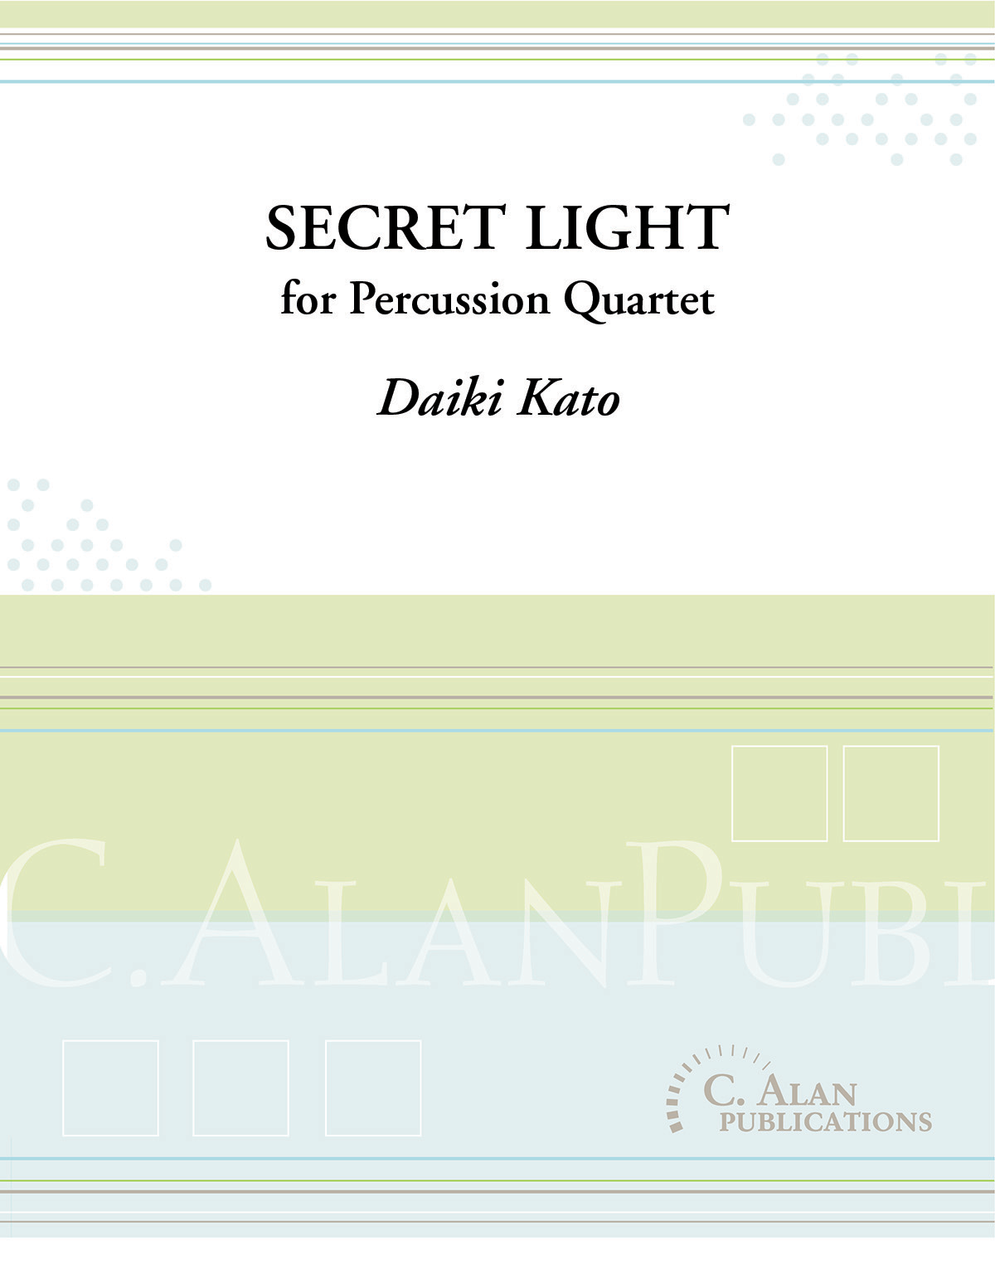 Secret Light by Daiki Kato